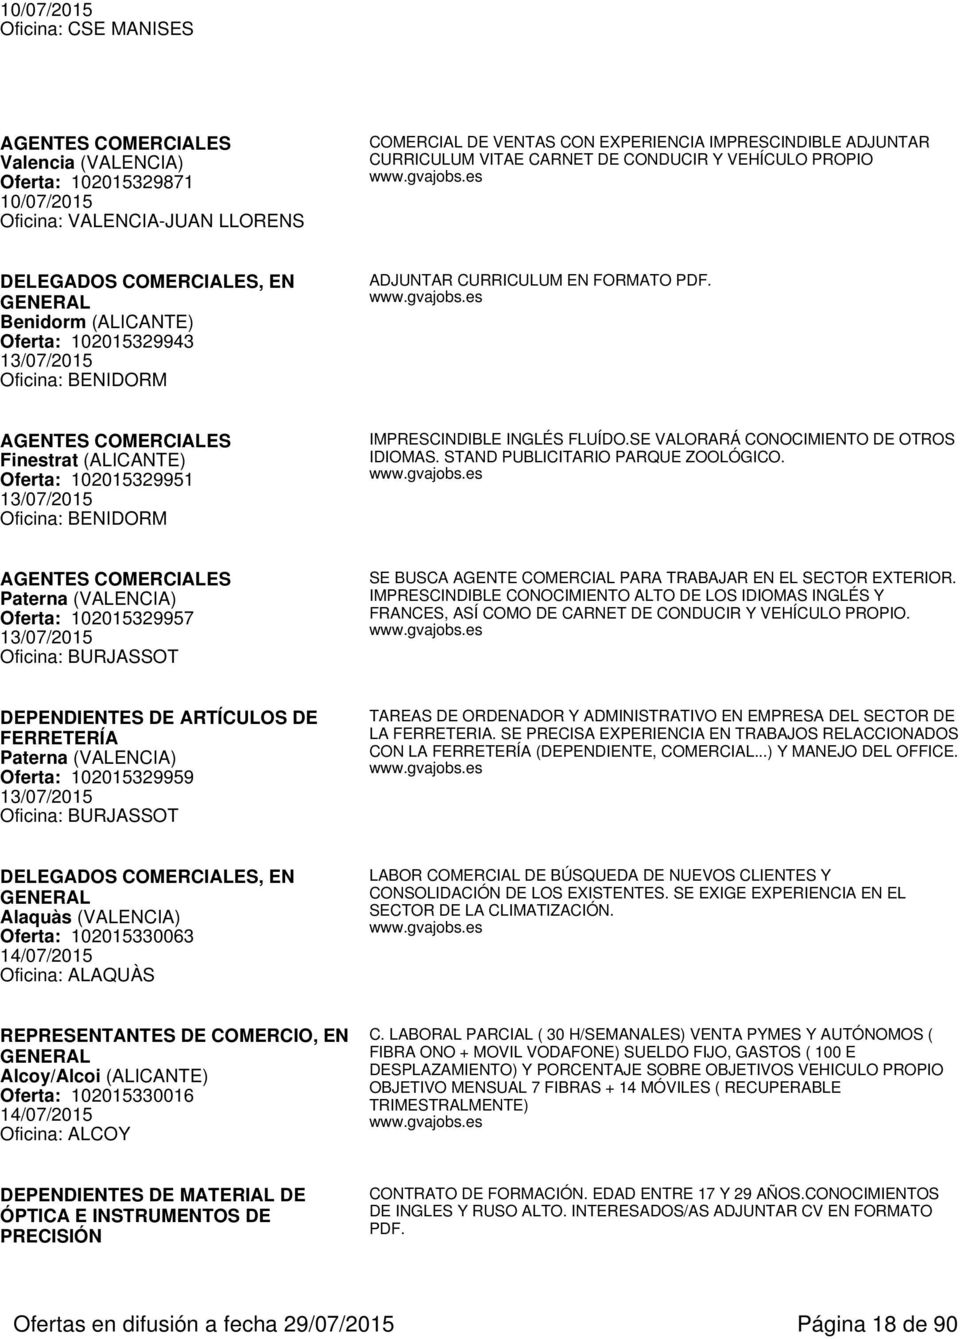 AGENTES COMERCIALES Finestrat (ALICANTE) Oferta: 102015329951 13/07/2015 Oficina: BENIDORM IMPRESCINDIBLE INGLÉS FLUÍDO.SE VALORARÁ CONOCIMIENTO DE OTROS IDIOMAS. STAND PUBLICITARIO PARQUE ZOOLÓGICO.